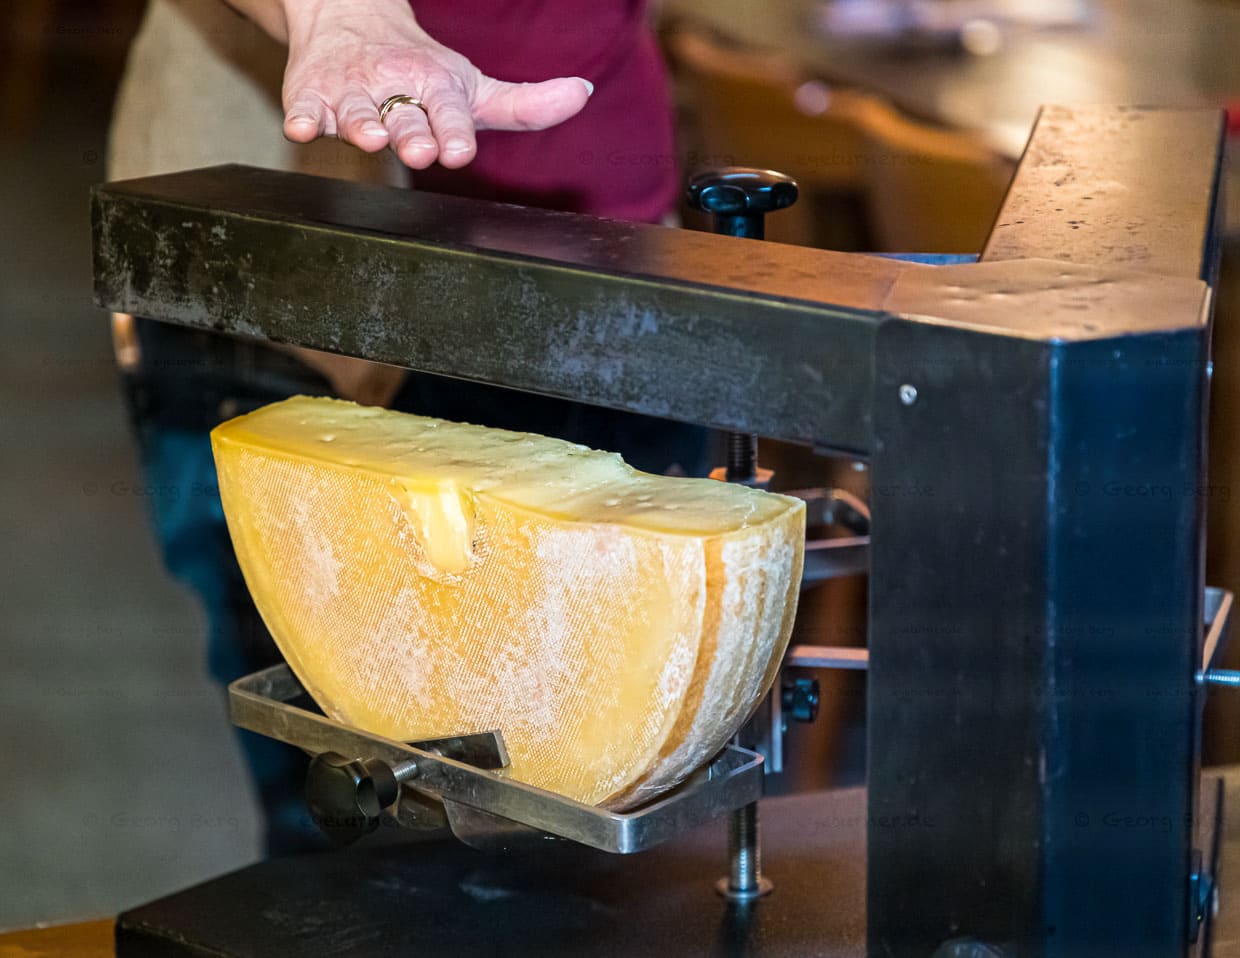 Heißes Ding! Der 3er Raclette-Ofen ist eine Art Käse-Karussell mit zwei Armen und drei Käsehalterungen. Der Käse rotiert und die Raclette-Gesellschaft bekommt stetig flüssigen Käse auf den Teller gestrichen / © Foto: Georg Berg